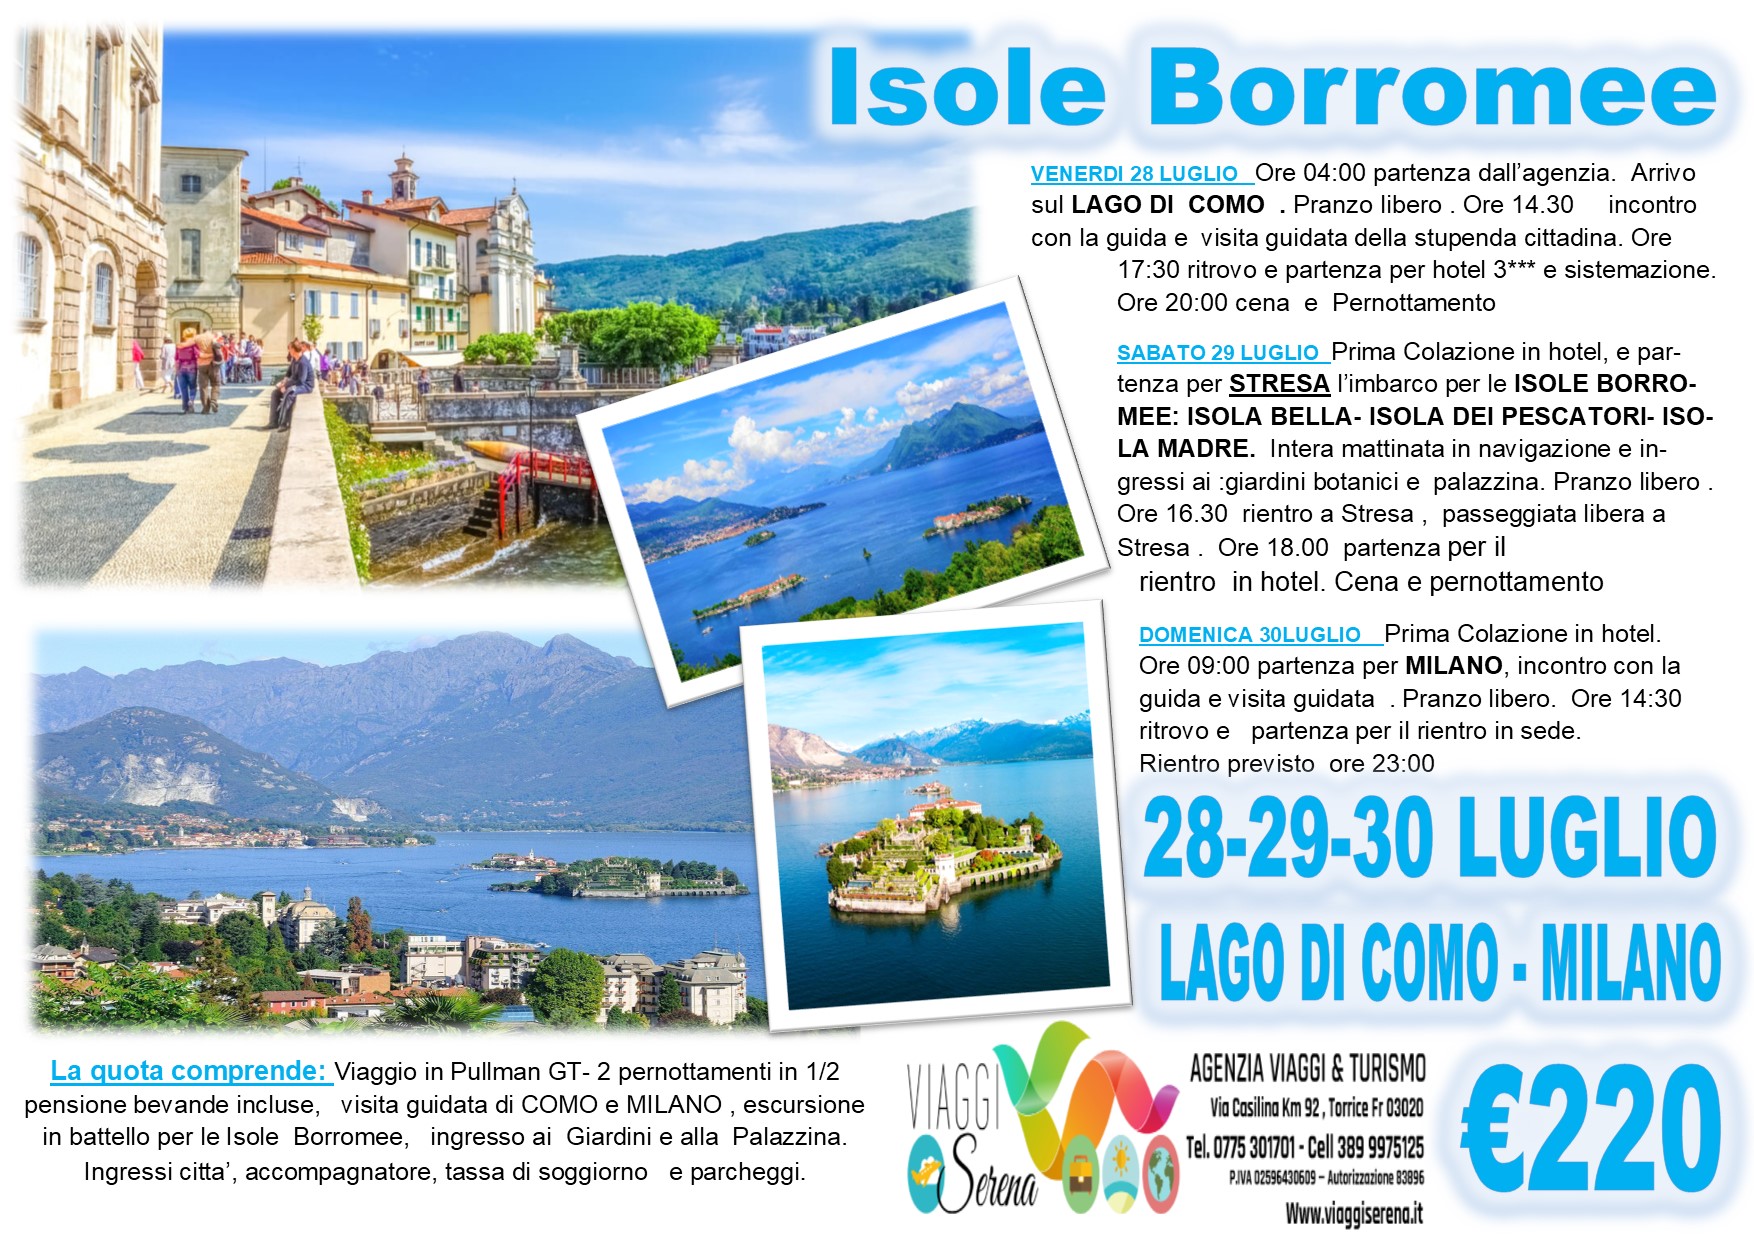 Viaggi di Gruppo: Lago Maggiore, Isole Borromee , Lago di Como & Milano 28-29-30 Luglio €220,00